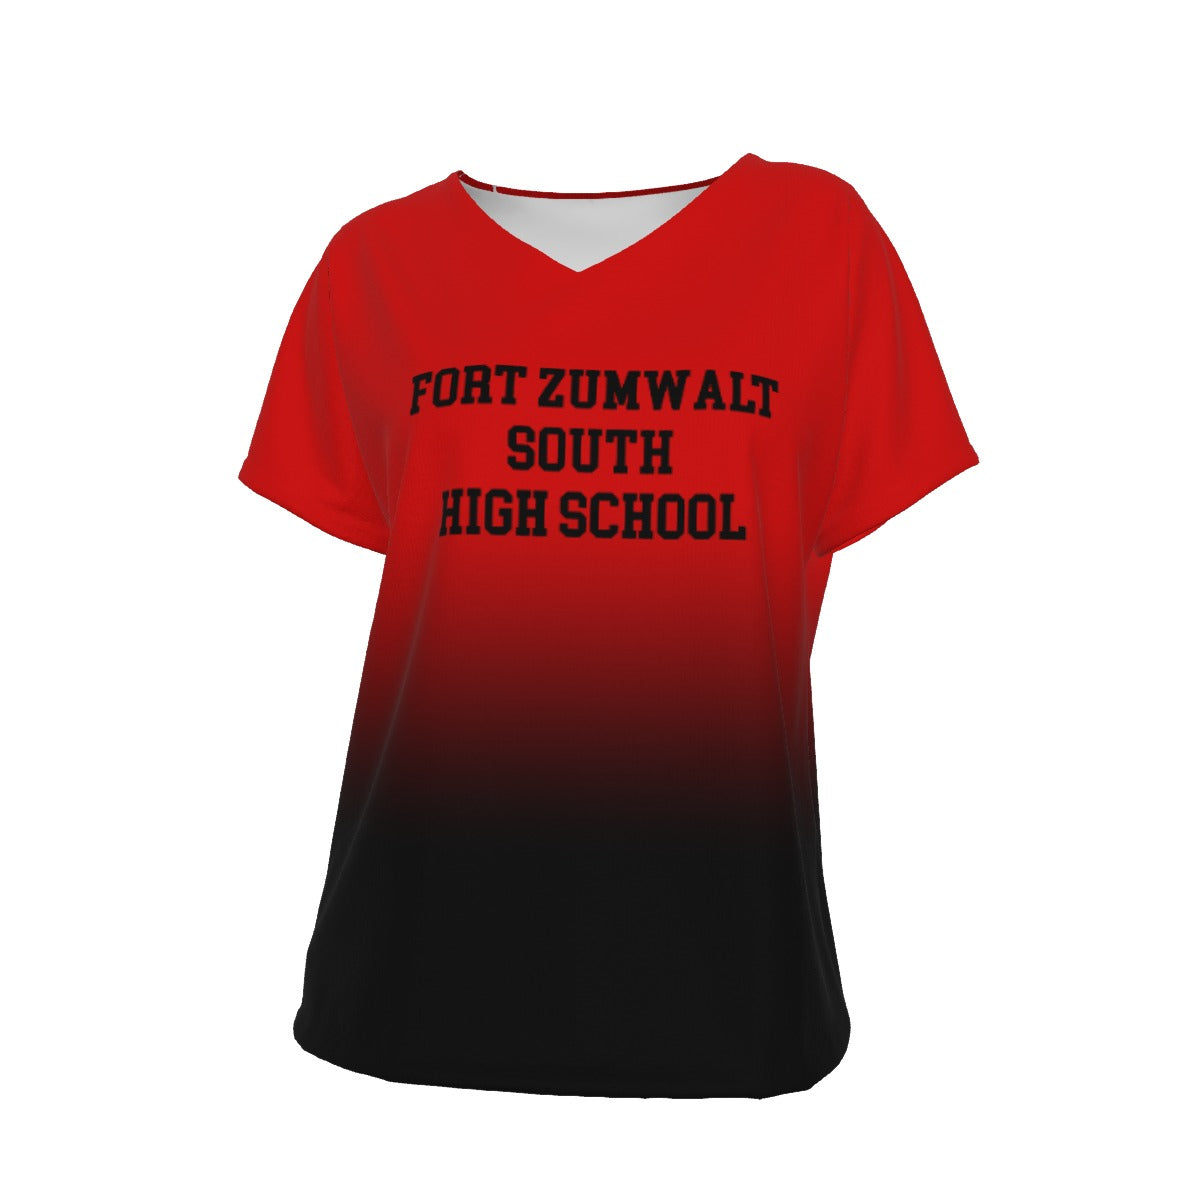 Fort Zumwalt South High School